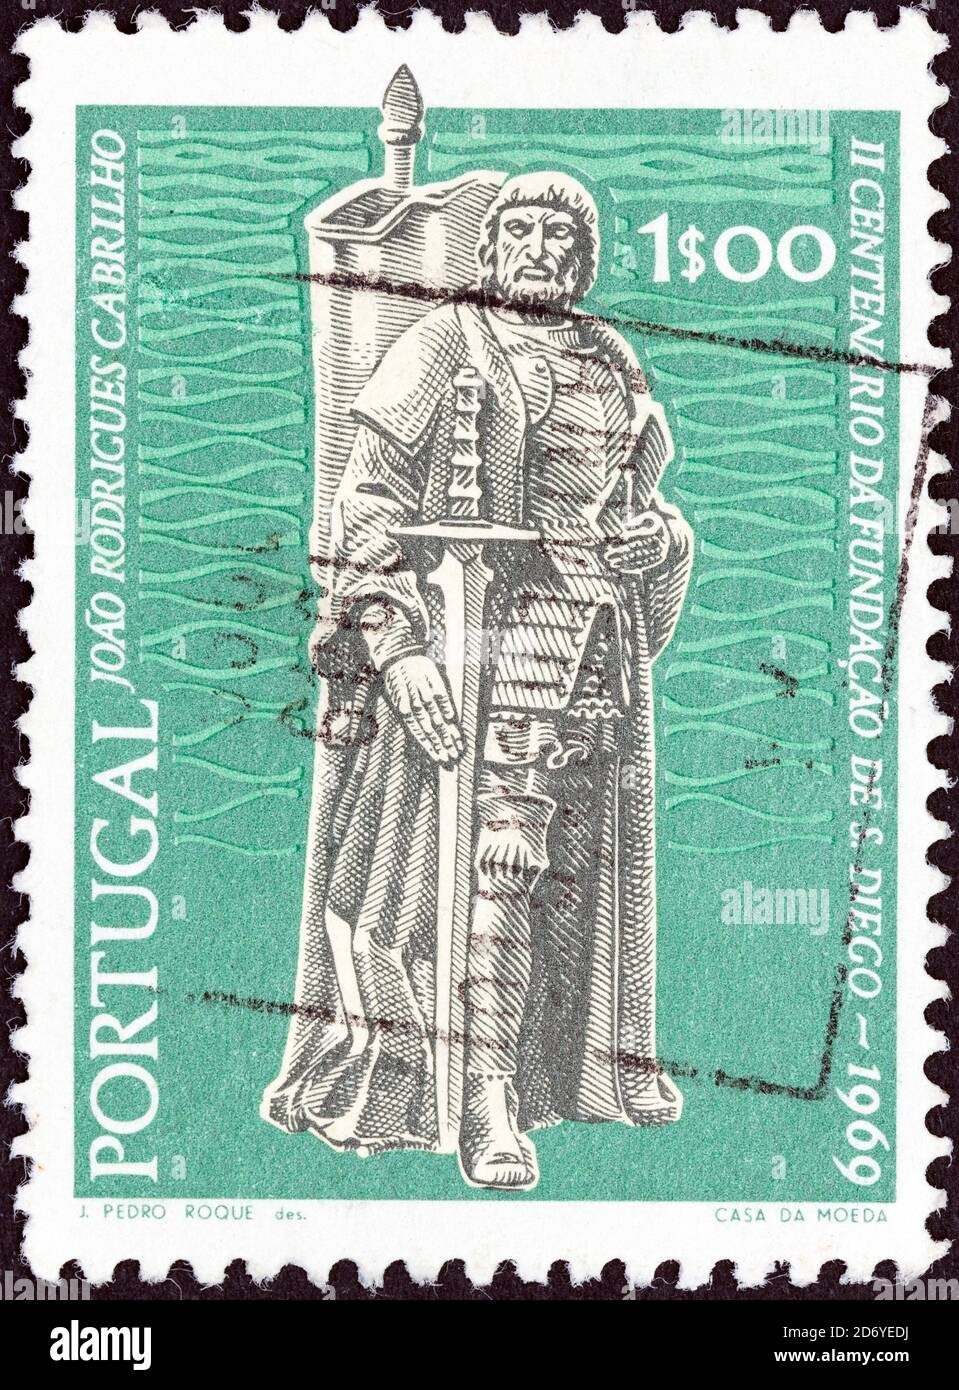 PORTUGAL - ALREDEDOR de 1969: Un sello impreso en Portugal muestra al navegante y colonizador Juan Rodríguez Cabrillo, alrededor de 1969. Foto de stock